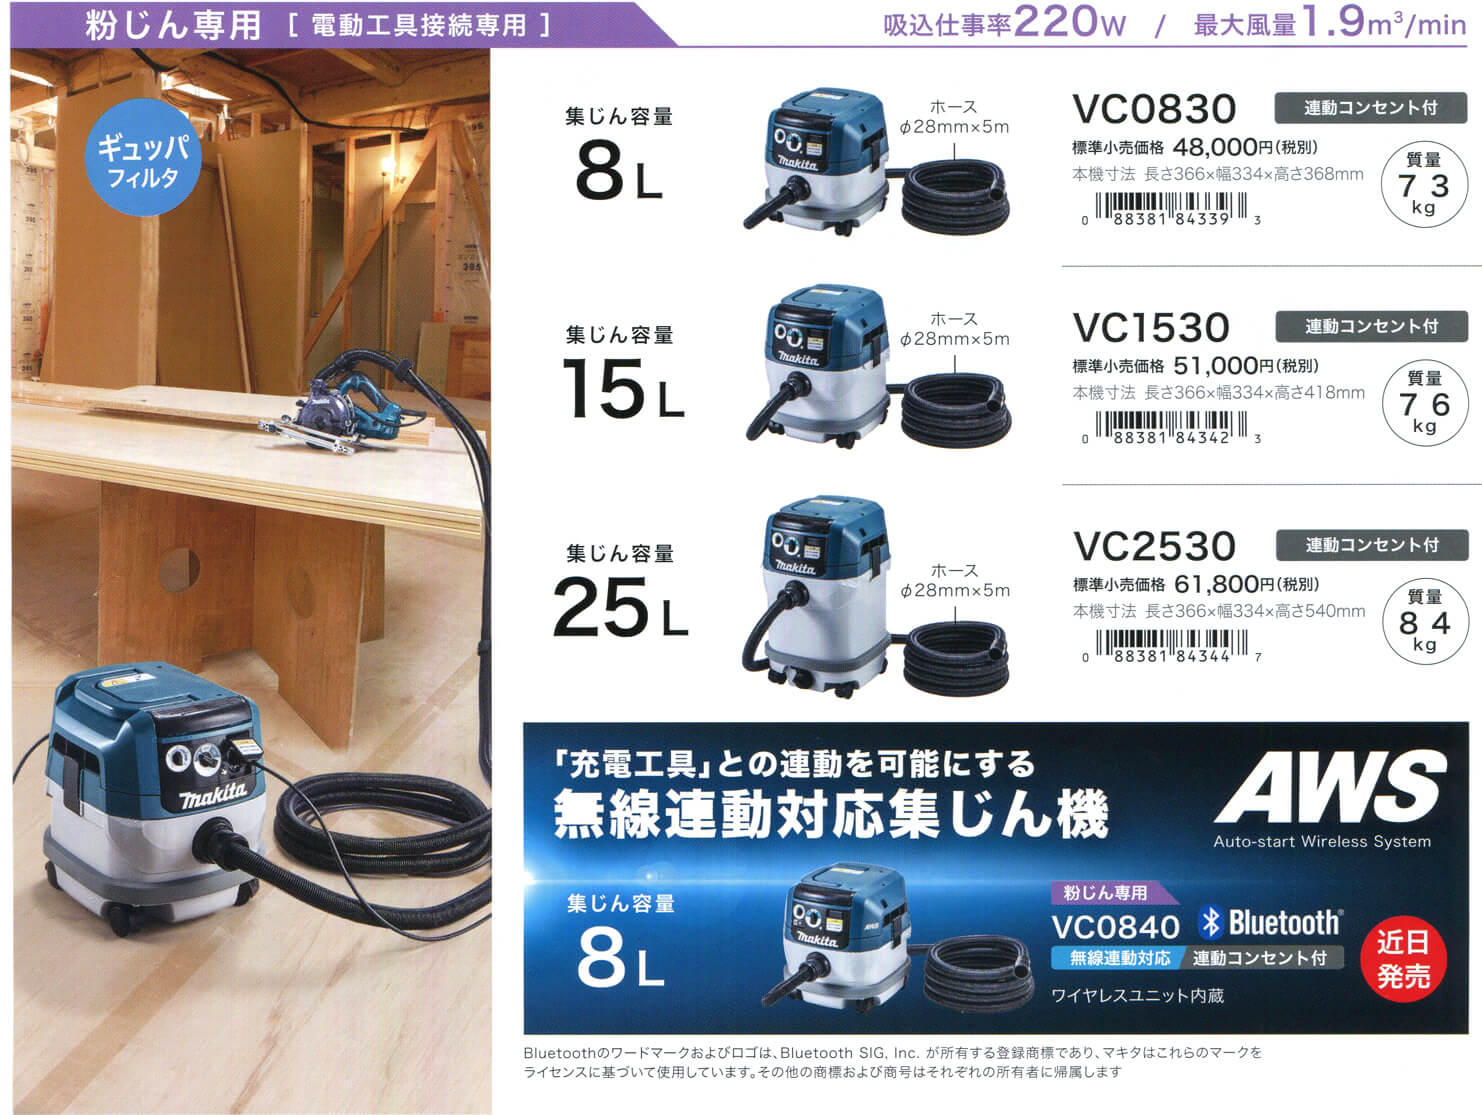 マキタ VC0830 集塵機【新型】